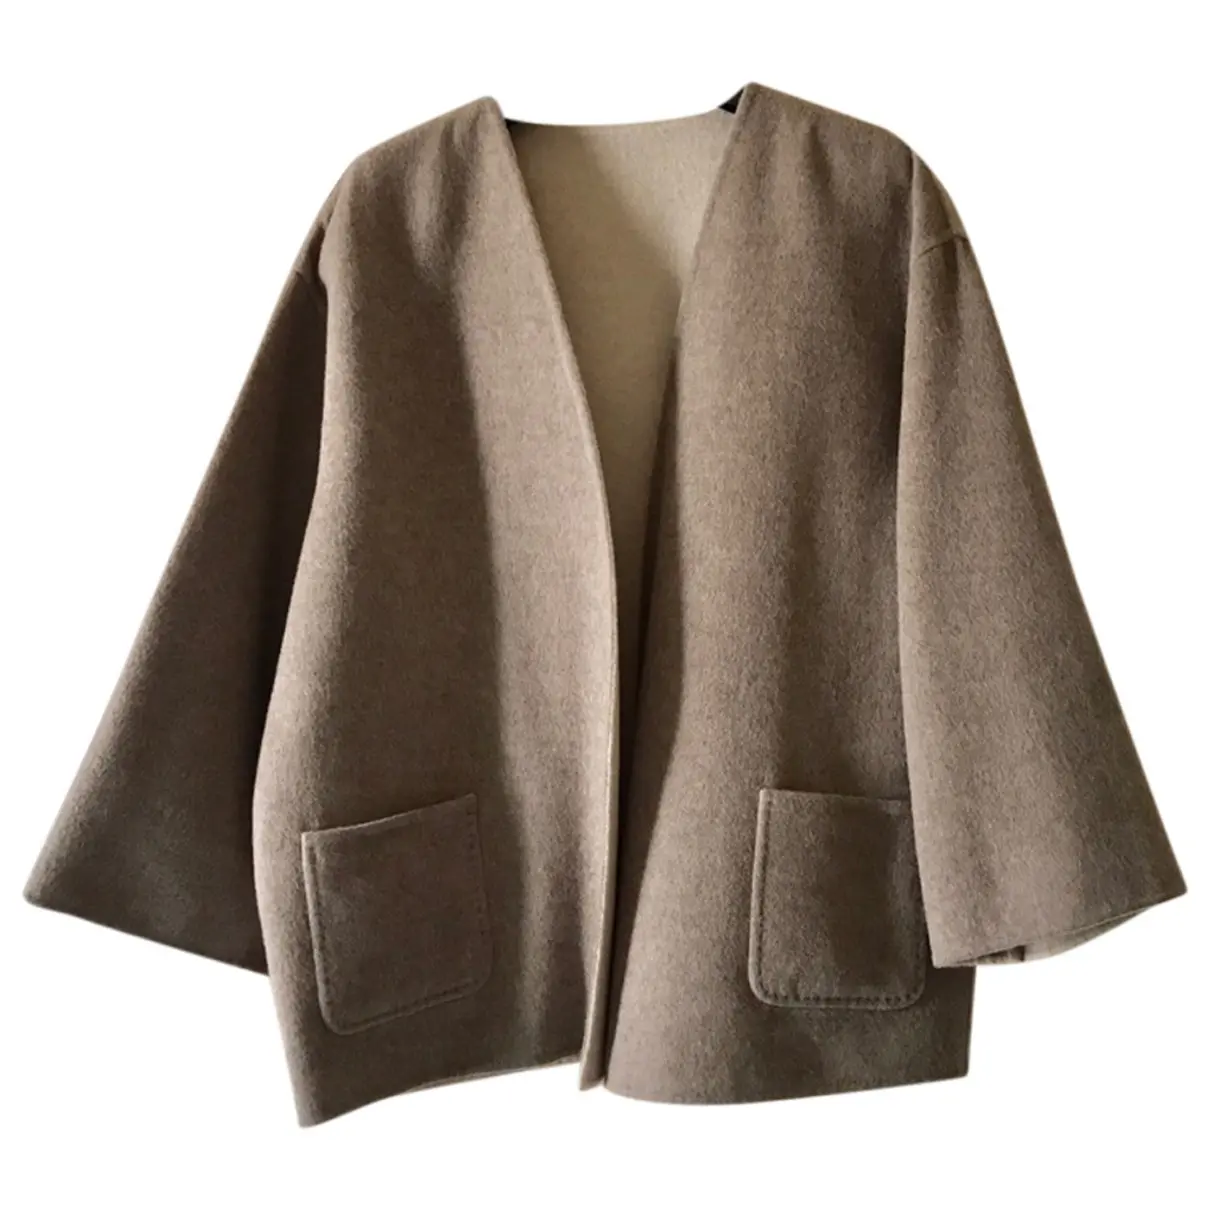 Wool jacket Max Mara